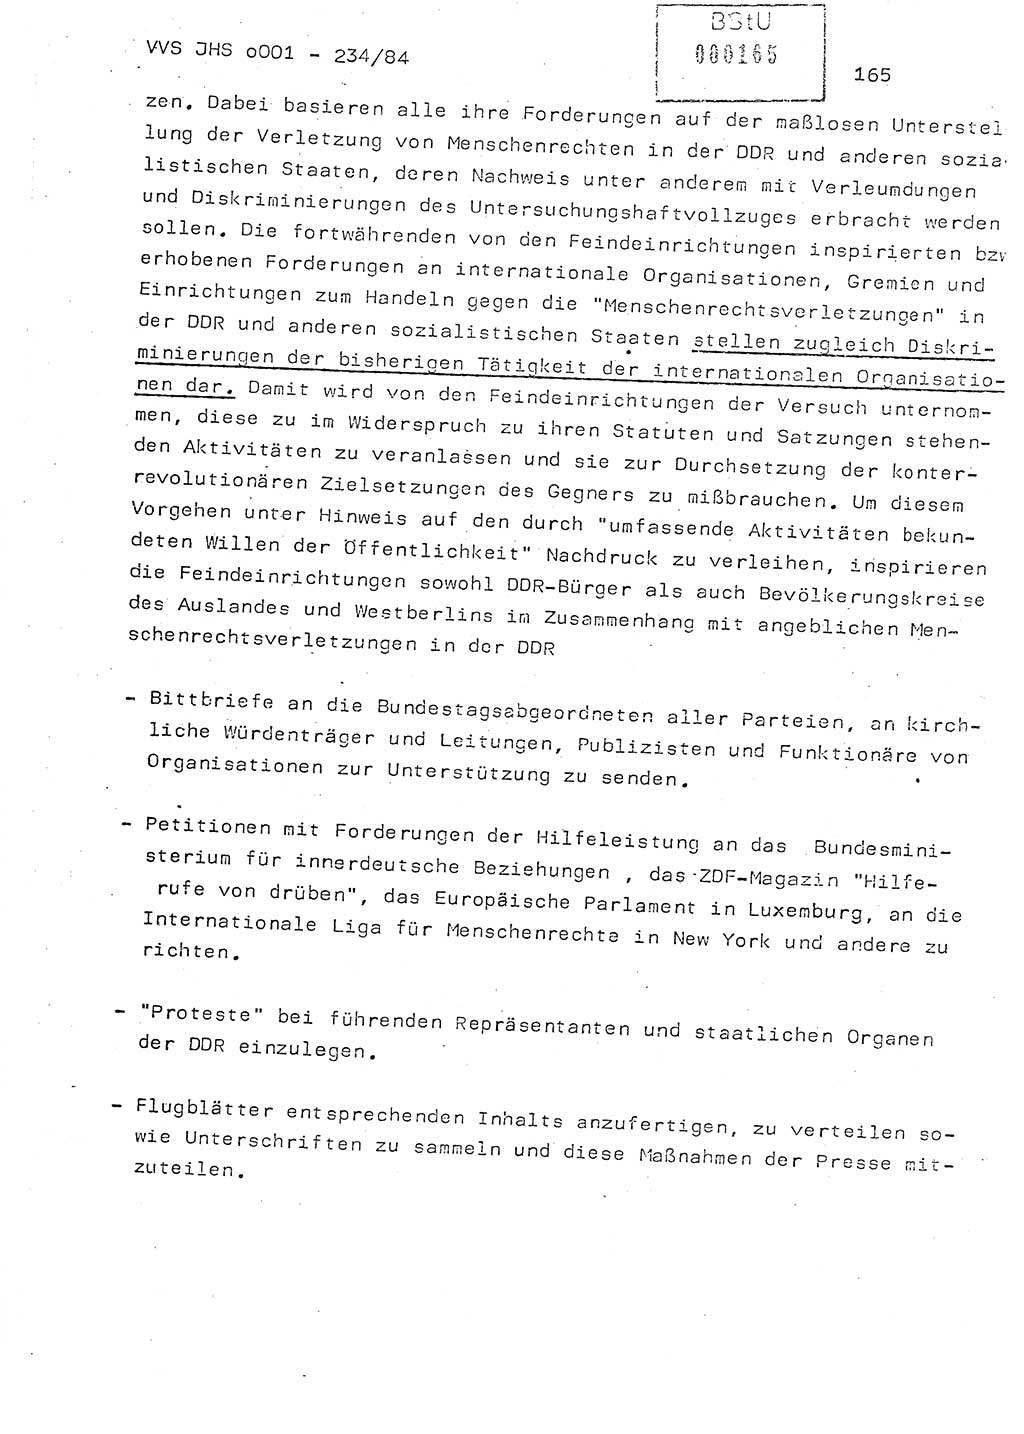 Dissertation Oberst Siegfried Rataizick (Abt. ⅩⅣ), Oberstleutnant Volkmar Heinz (Abt. ⅩⅣ), Oberstleutnant Werner Stein (HA Ⅸ), Hauptmann Heinz Conrad (JHS), Ministerium für Staatssicherheit (MfS) [Deutsche Demokratische Republik (DDR)], Juristische Hochschule (JHS), Vertrauliche Verschlußsache (VVS) o001-234/84, Potsdam 1984, Seite 165 (Diss. MfS DDR JHS VVS o001-234/84 1984, S. 165)